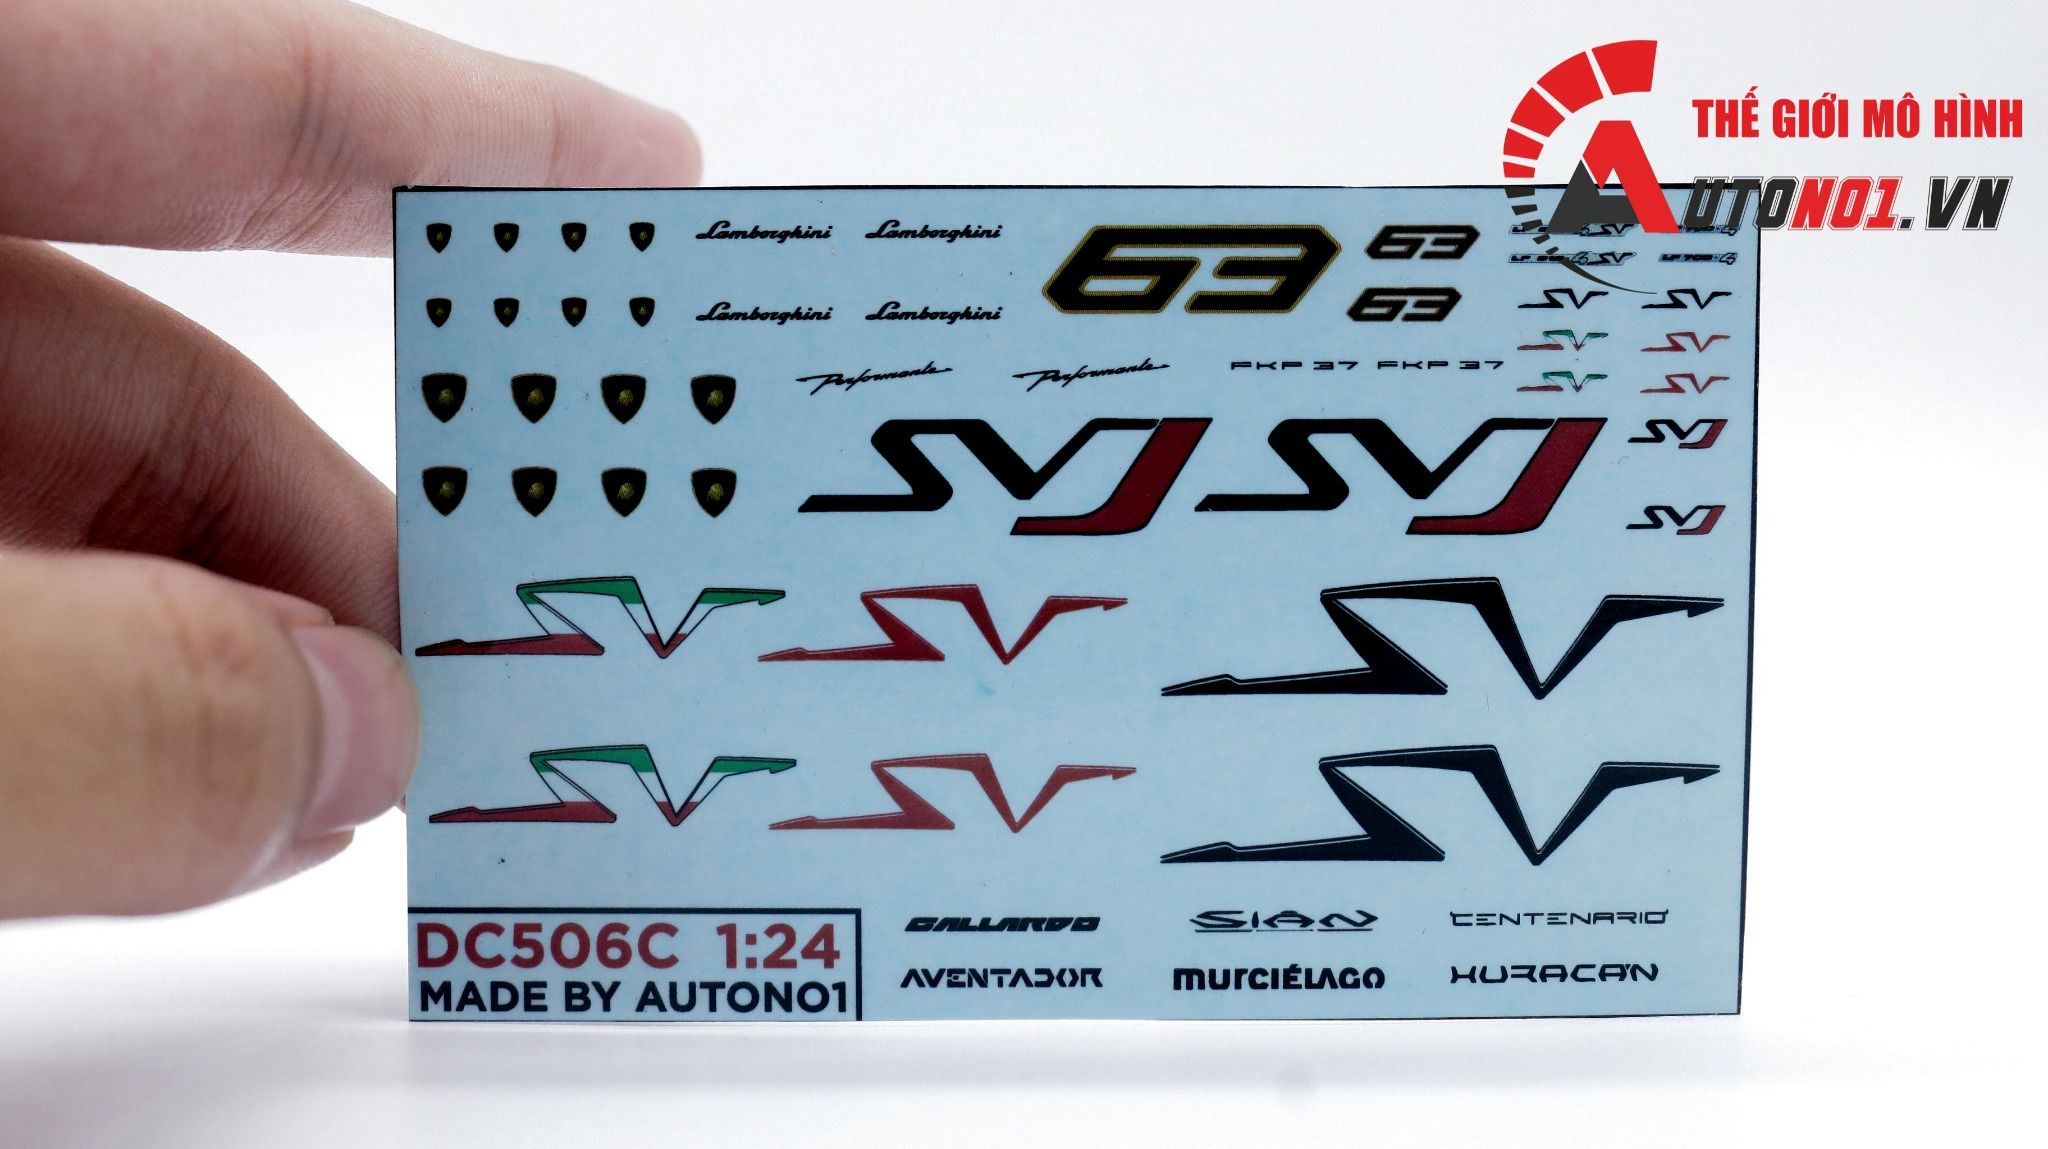  Decal nước trang trí xe Lamborghini - SVJ - SV - Aventador - Sian - Huracan tỉ lệ 1:24 Autono1 DC506c 